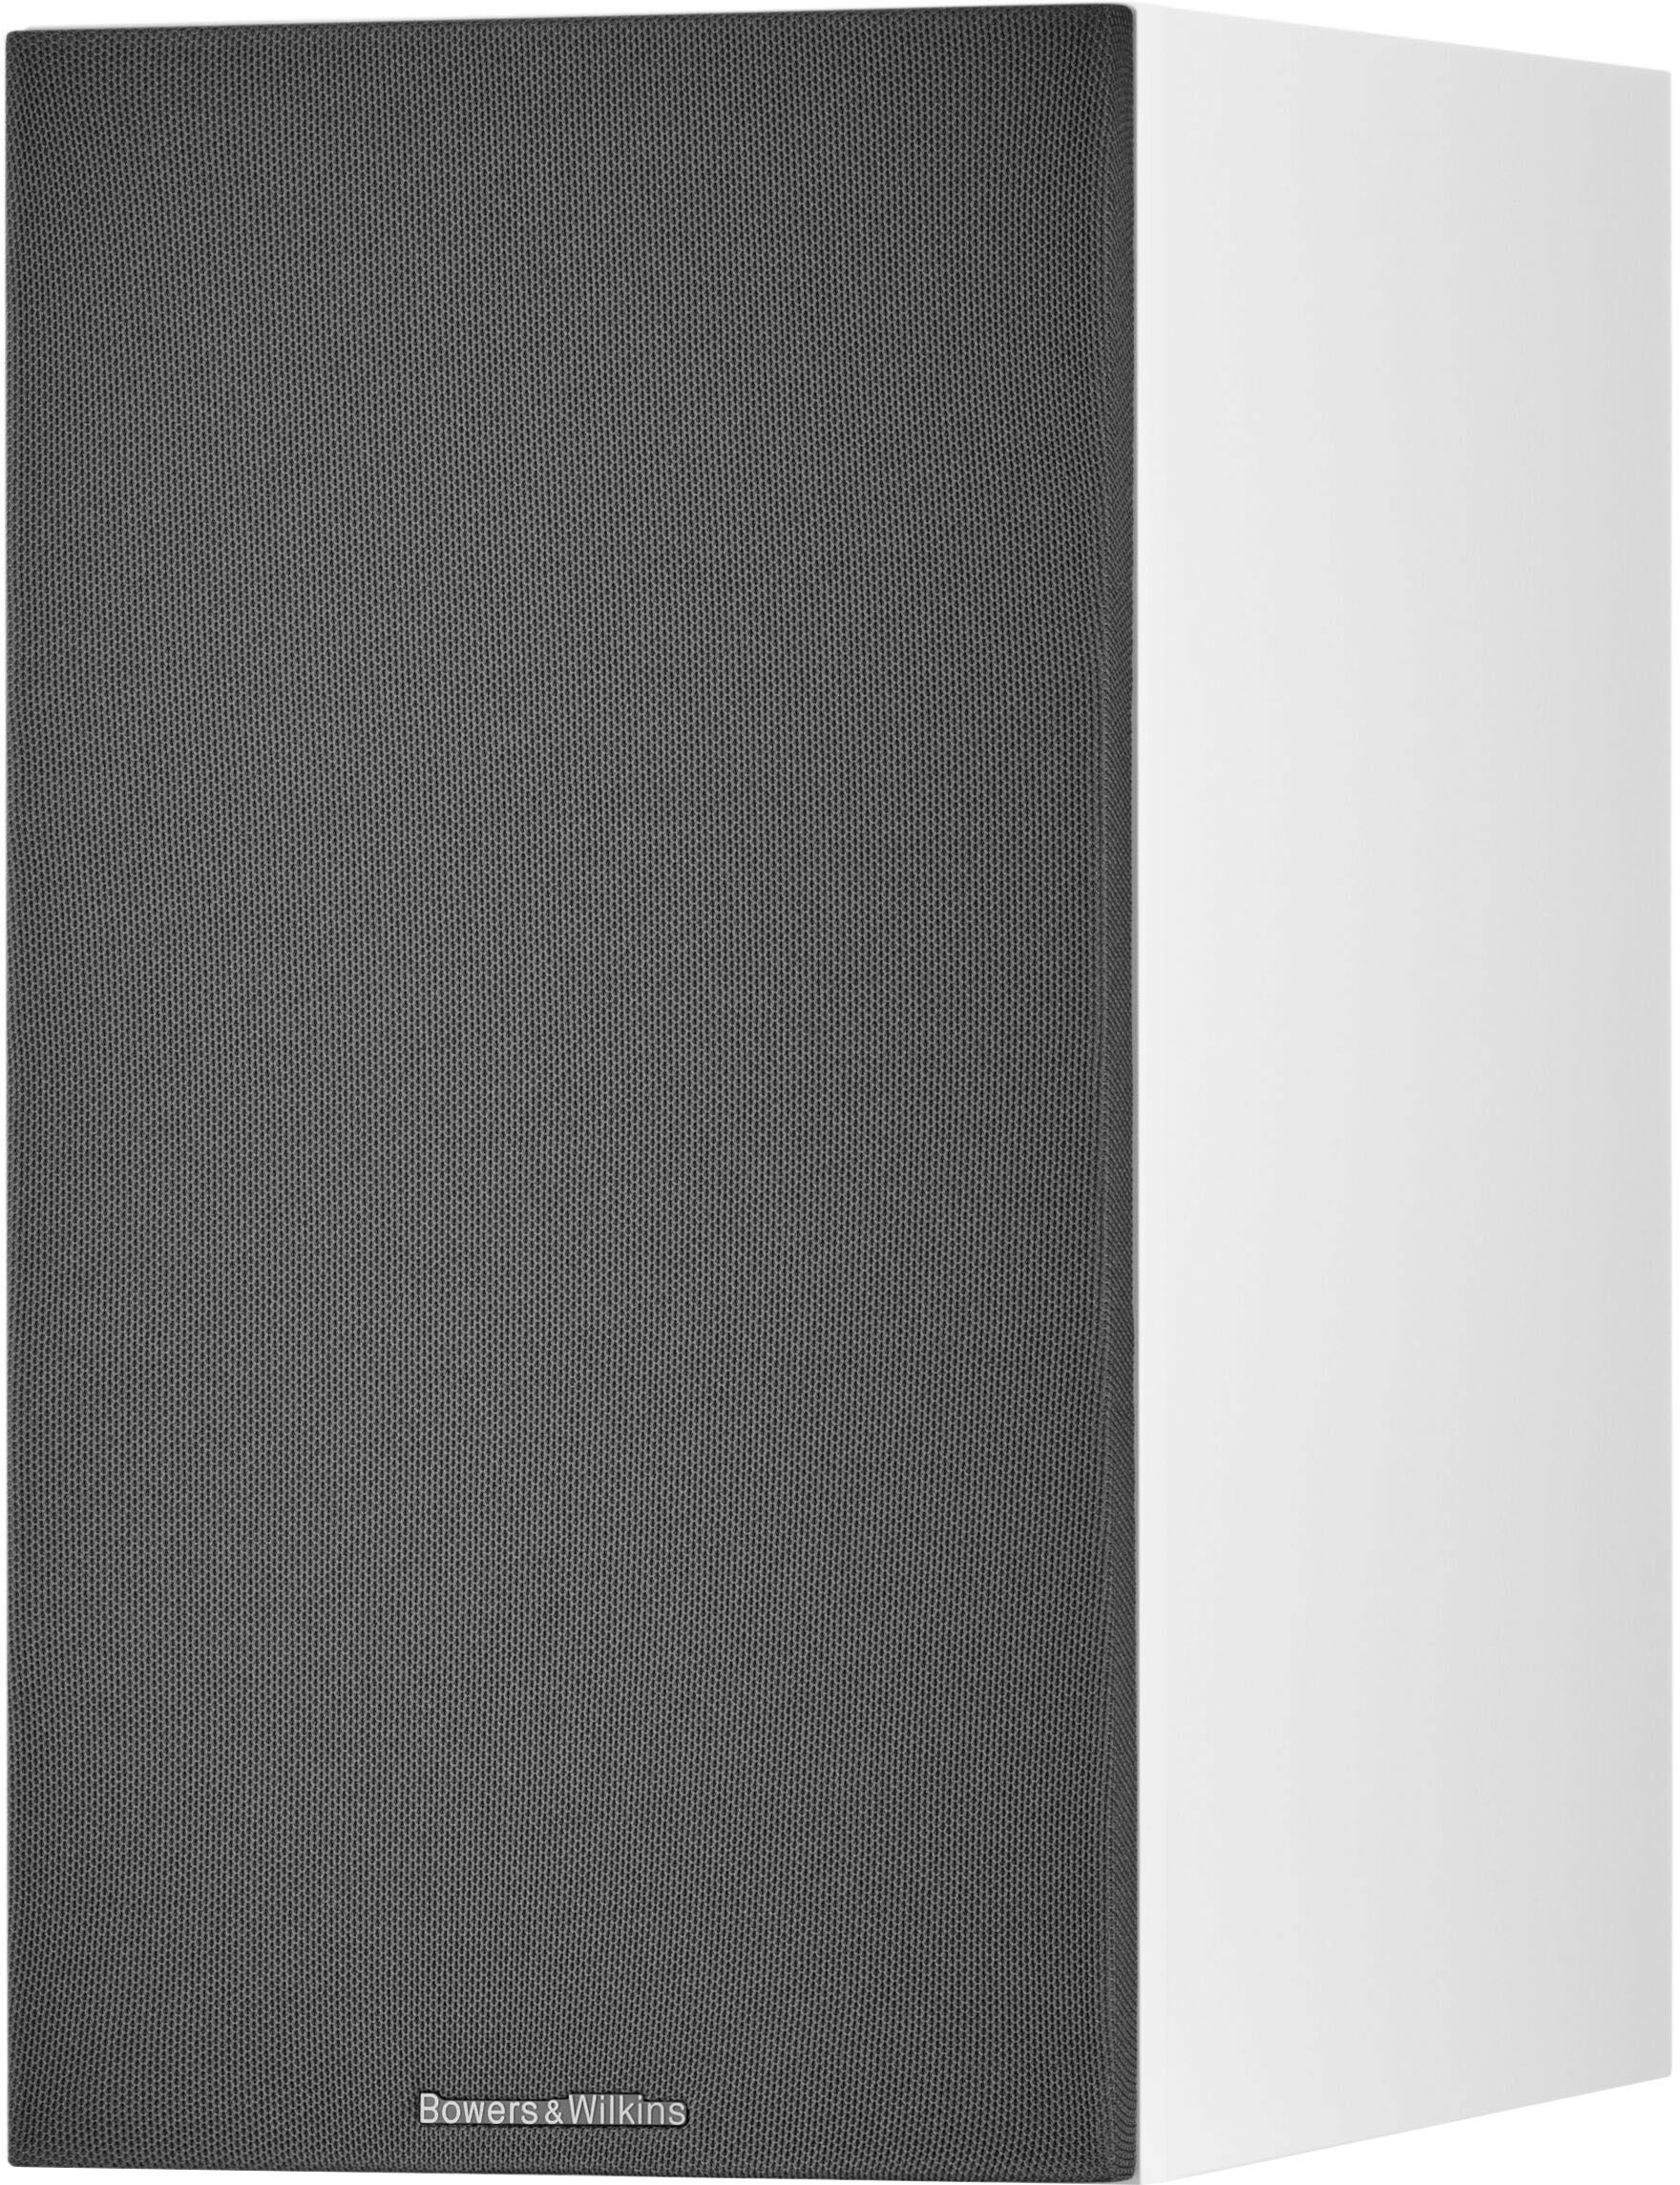 Angle View: Bowers & Wilkins - 600 Series Anniversary Edition 2-way Bookshelf Speaker w/6.5" midbass (pair) - White